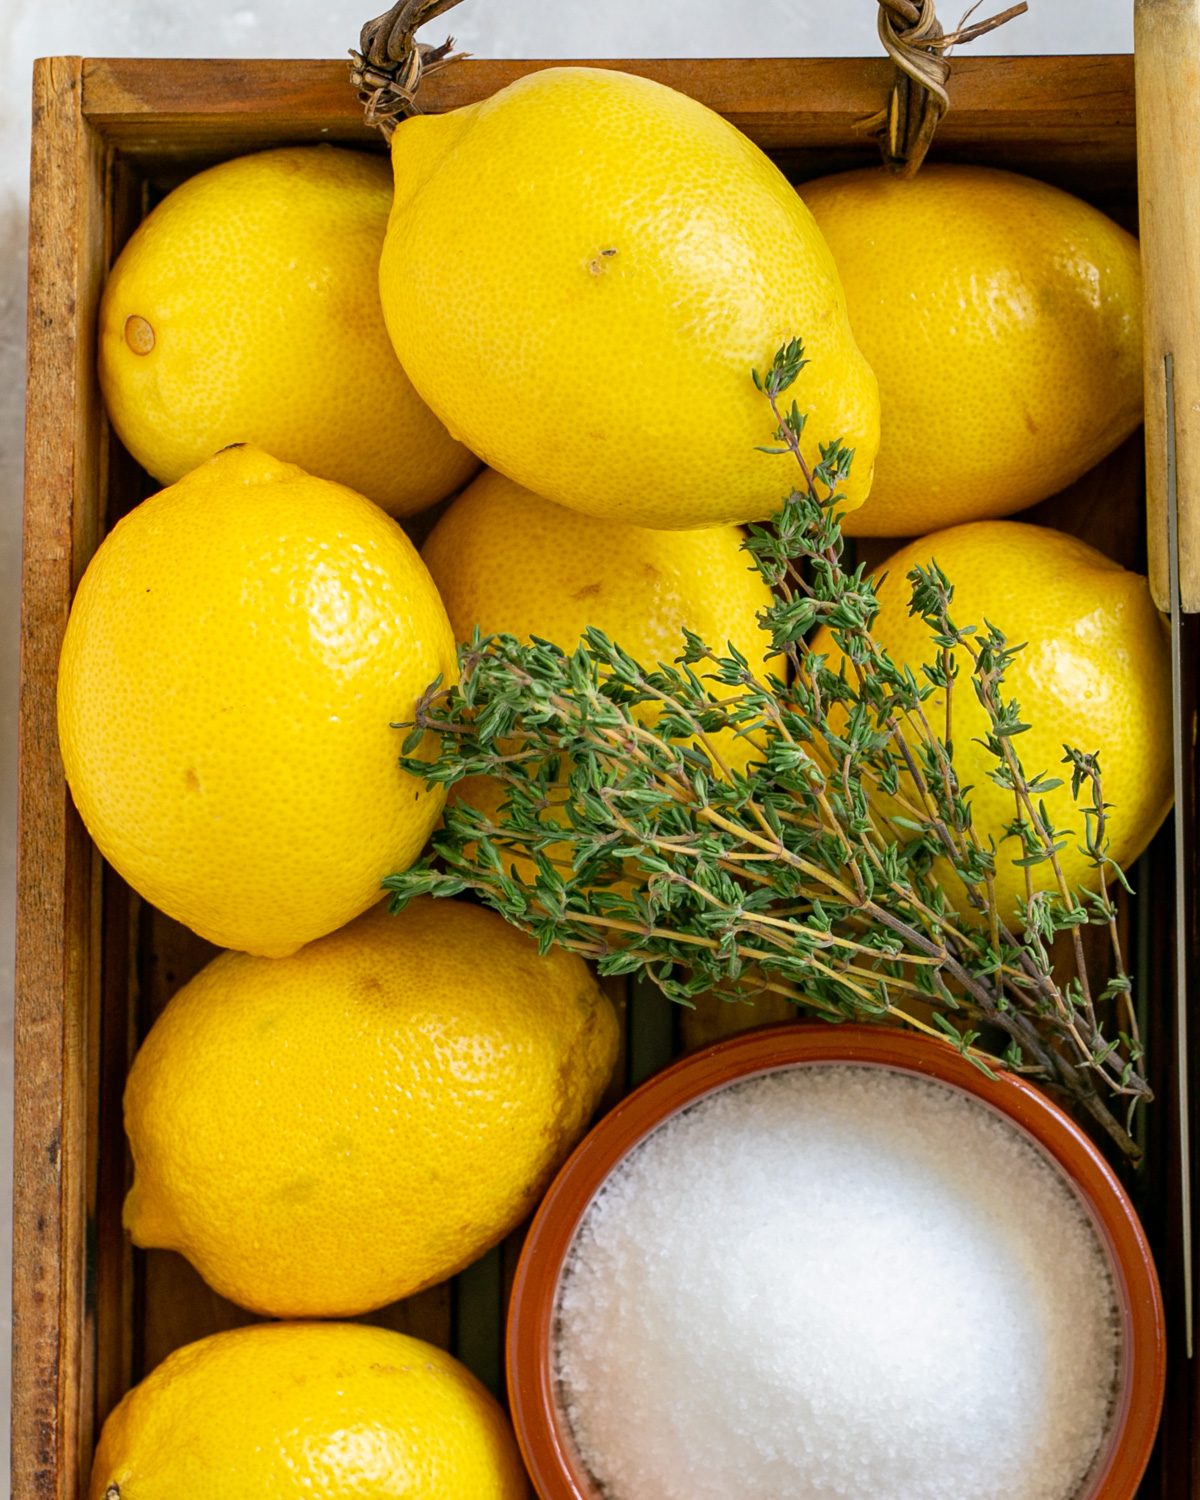 Fresh lemons from the garden